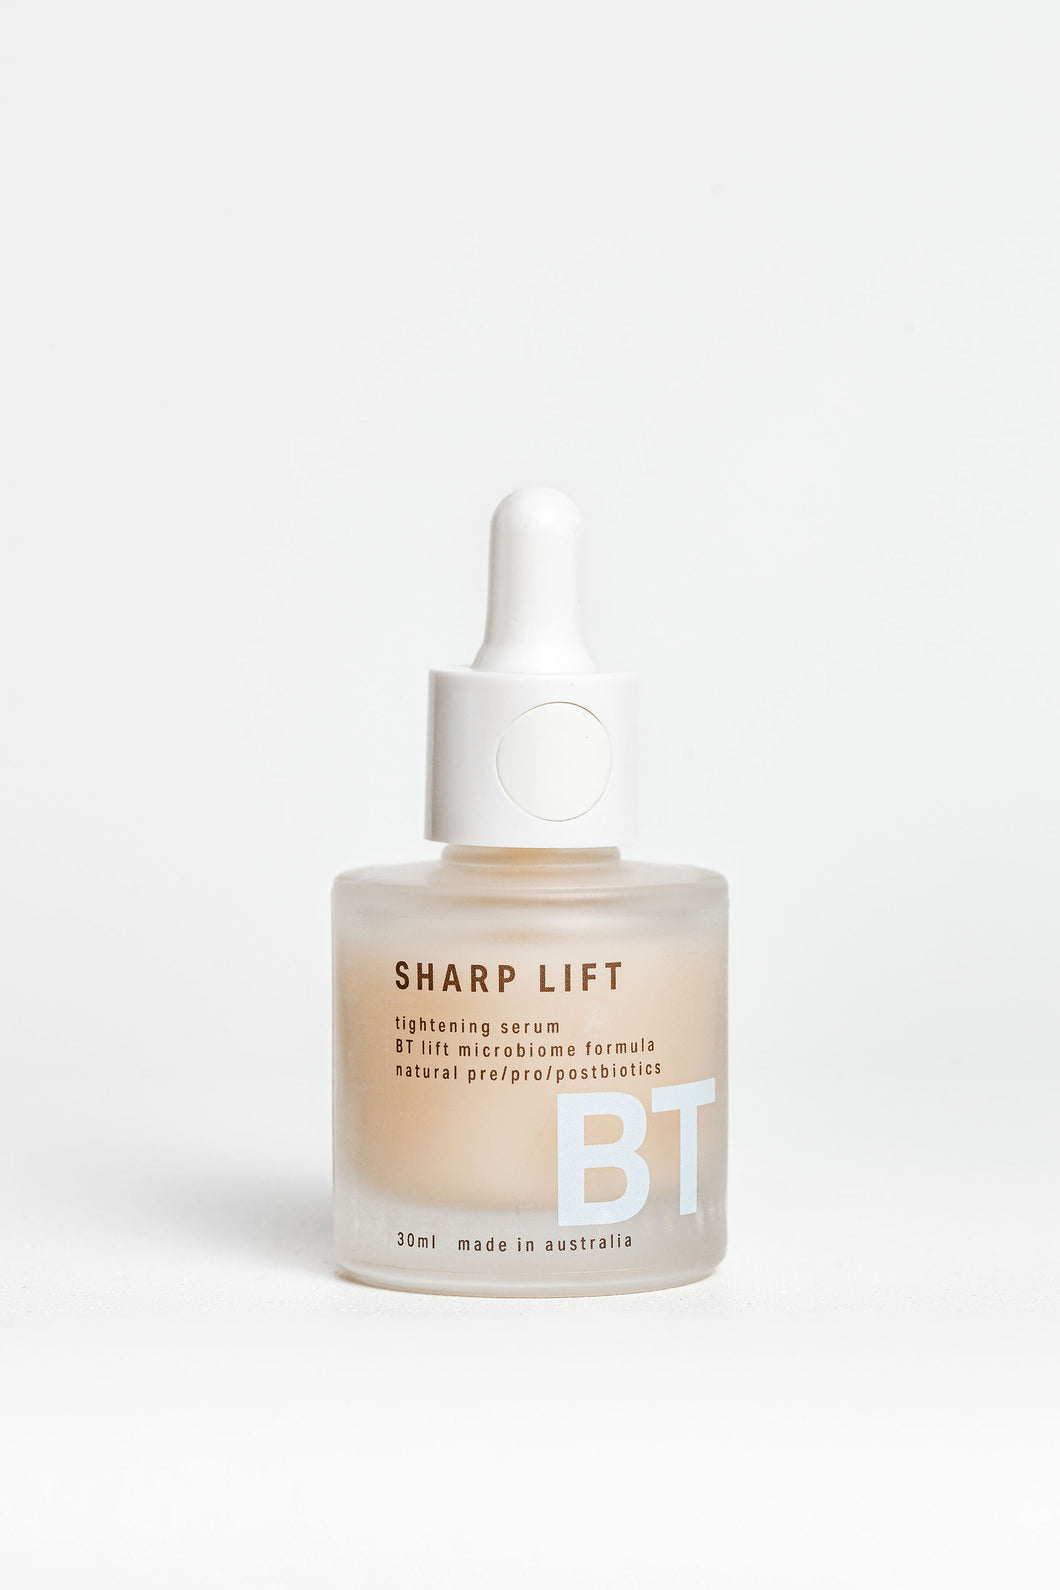 リフトアップ美容液<br>Sharp Lift　 30ml<br><small>シャープ・リフト</small><br><b>キメを整えハリを与える</b><br>“BTリフト菌で上向きな印象の肌に”